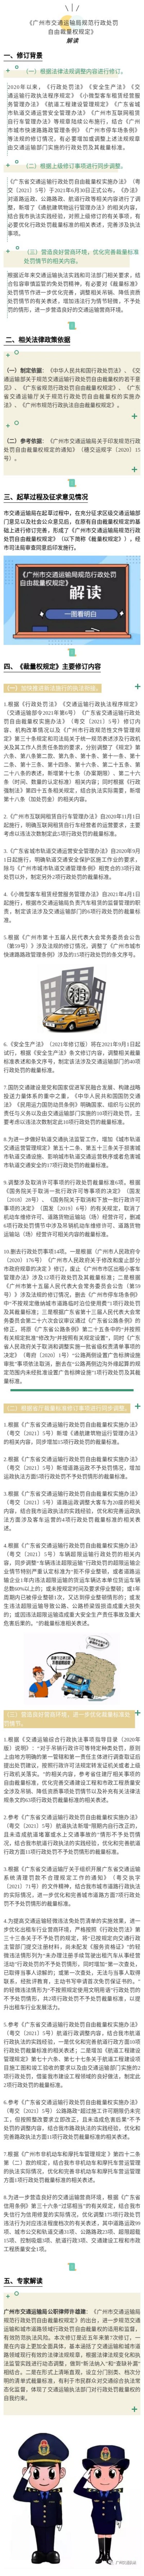 附件2.2：【一图解读】《广州市交通运输局规范行政处罚自由裁量权规定》.jpg